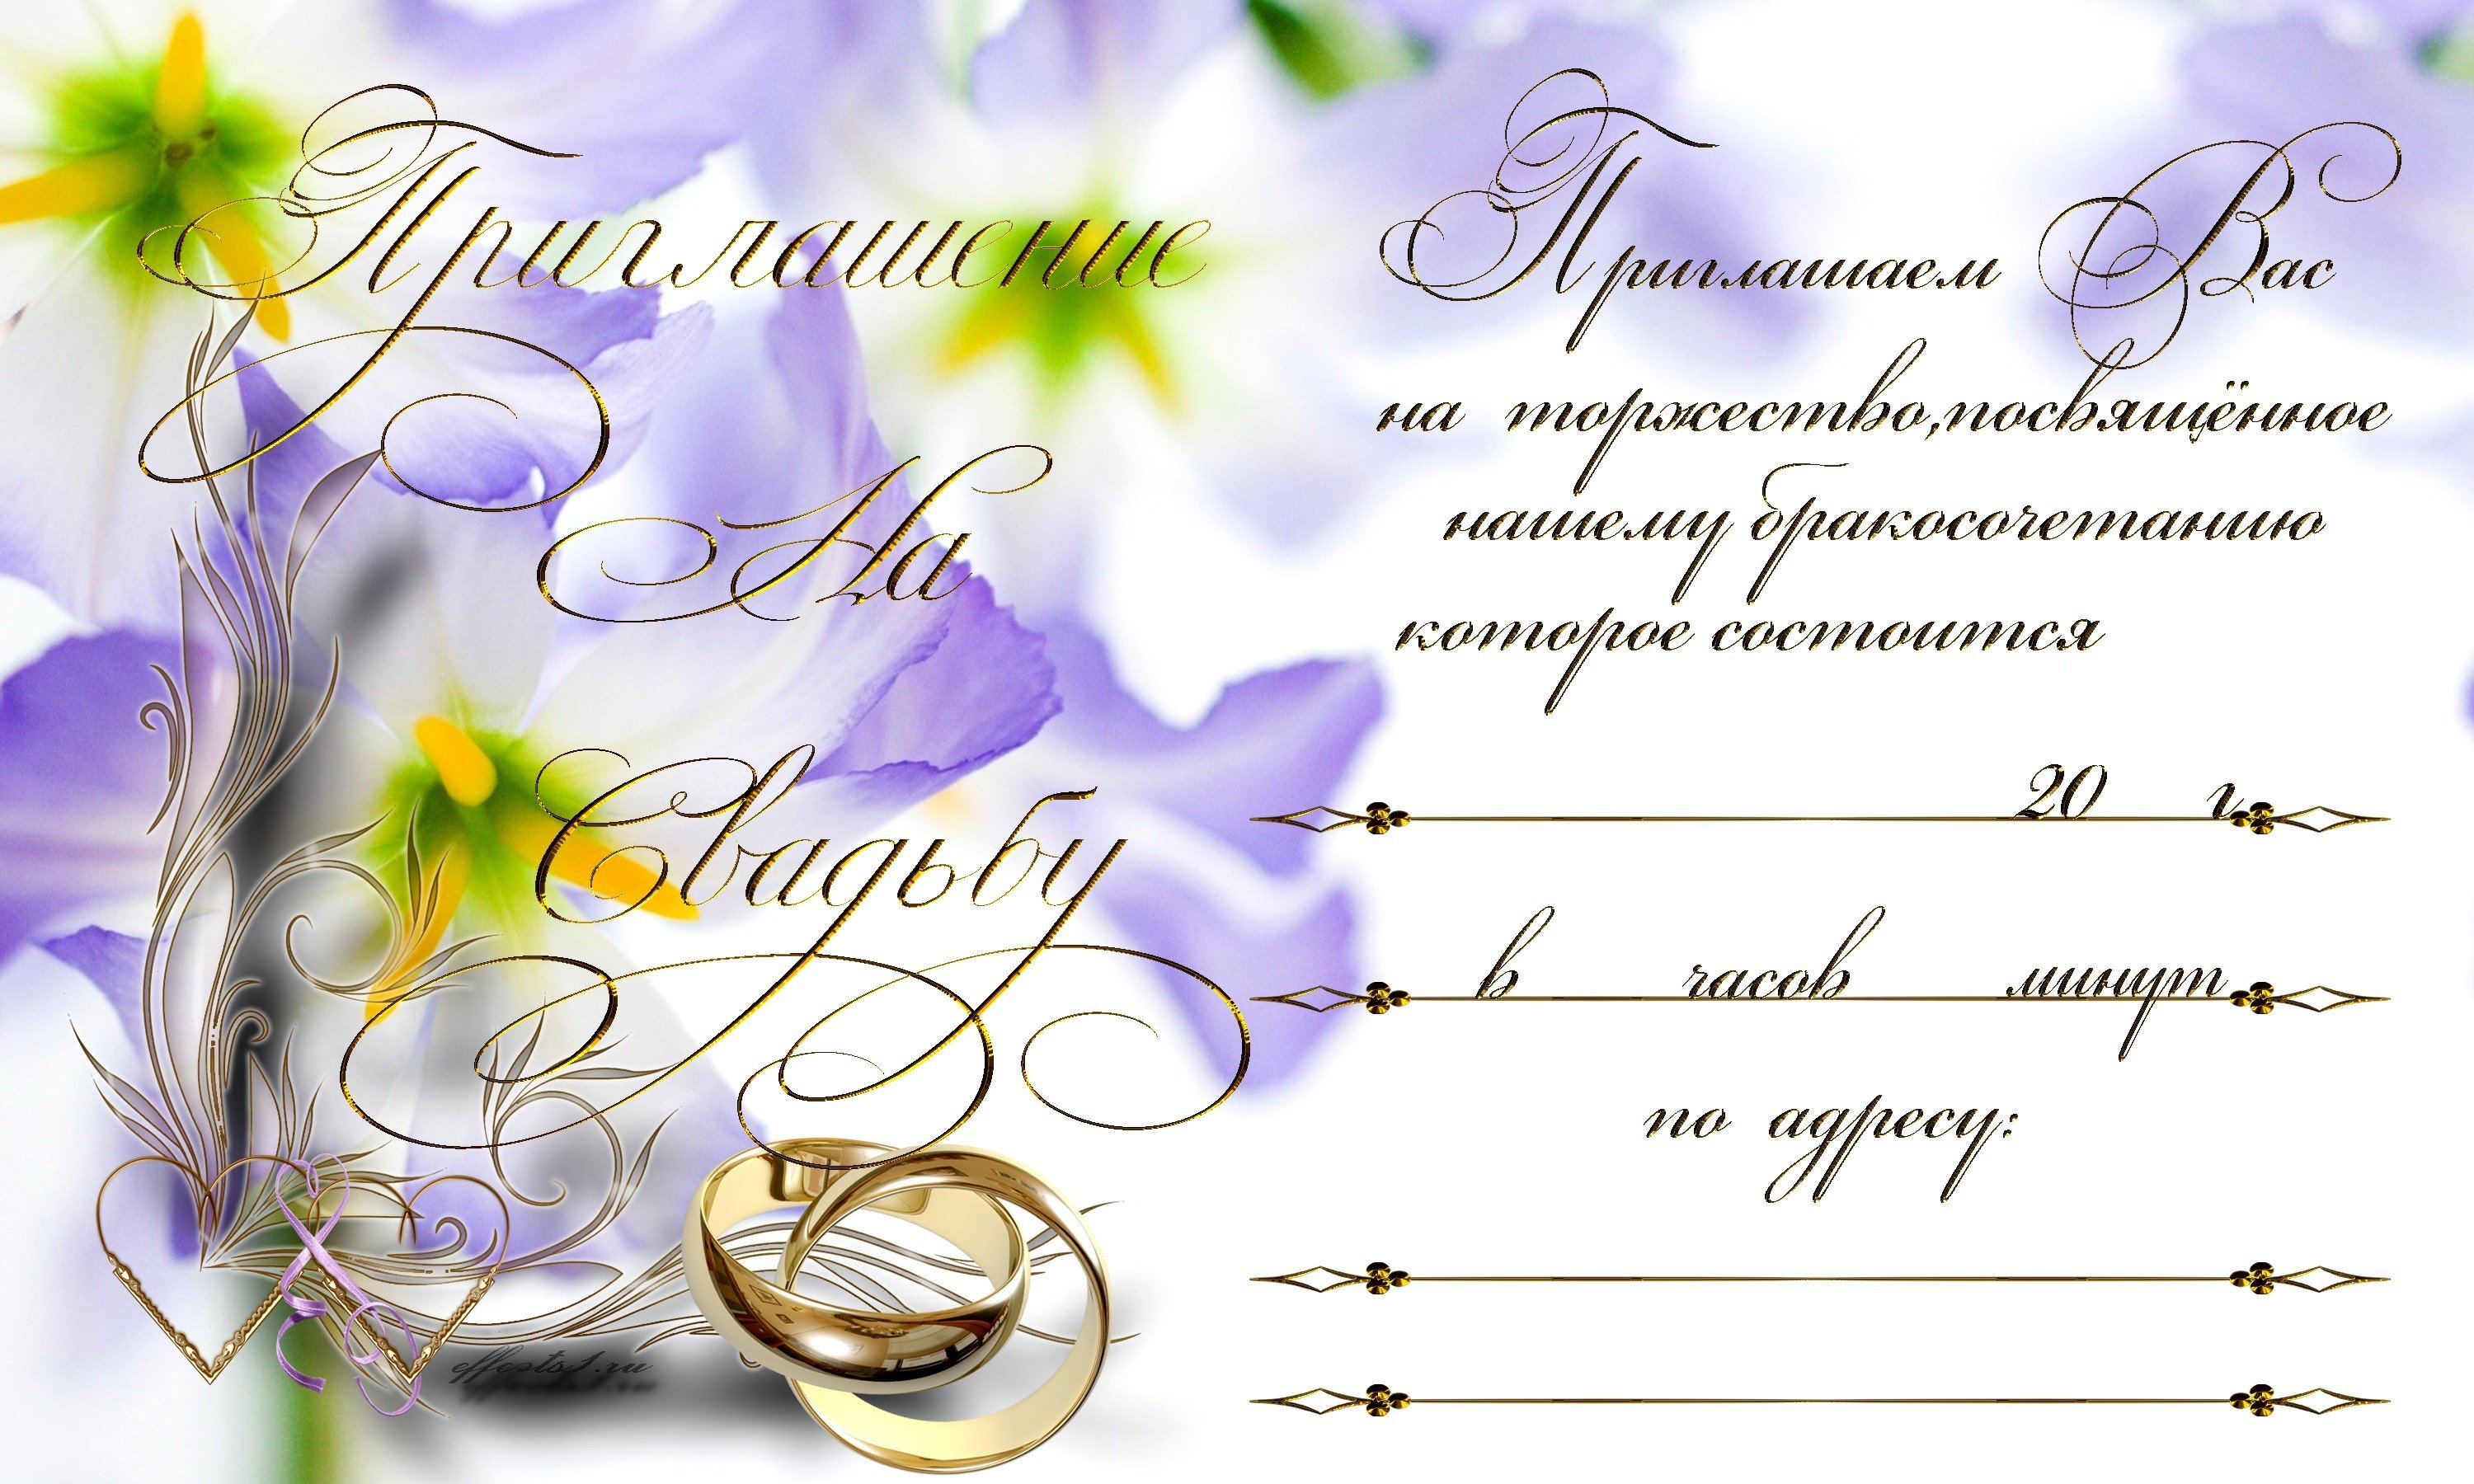 WeddingPost.ru сервис свадебных приглашений и стиля